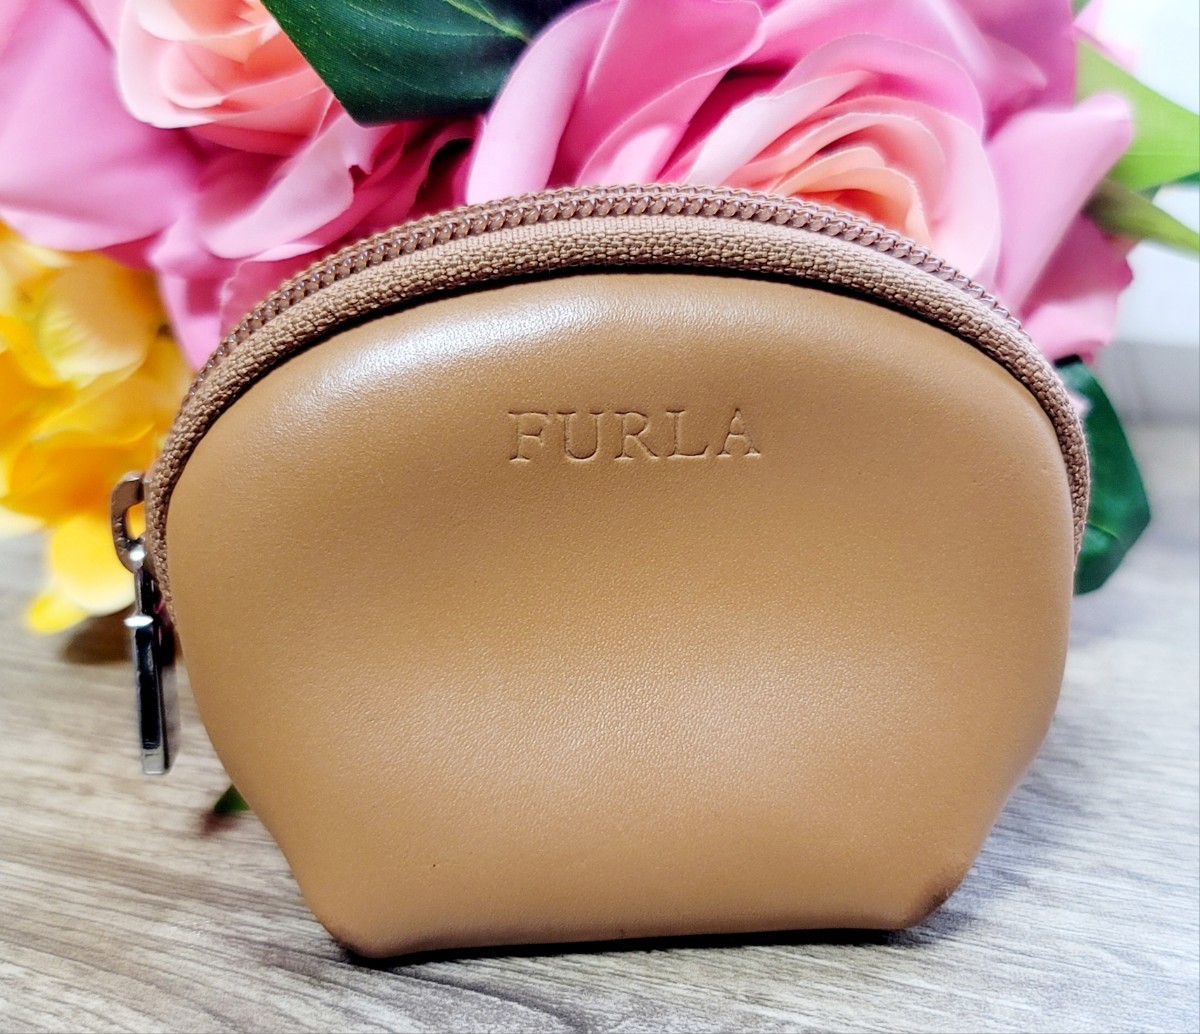 [FURLA] Furla coin case leather light brown 